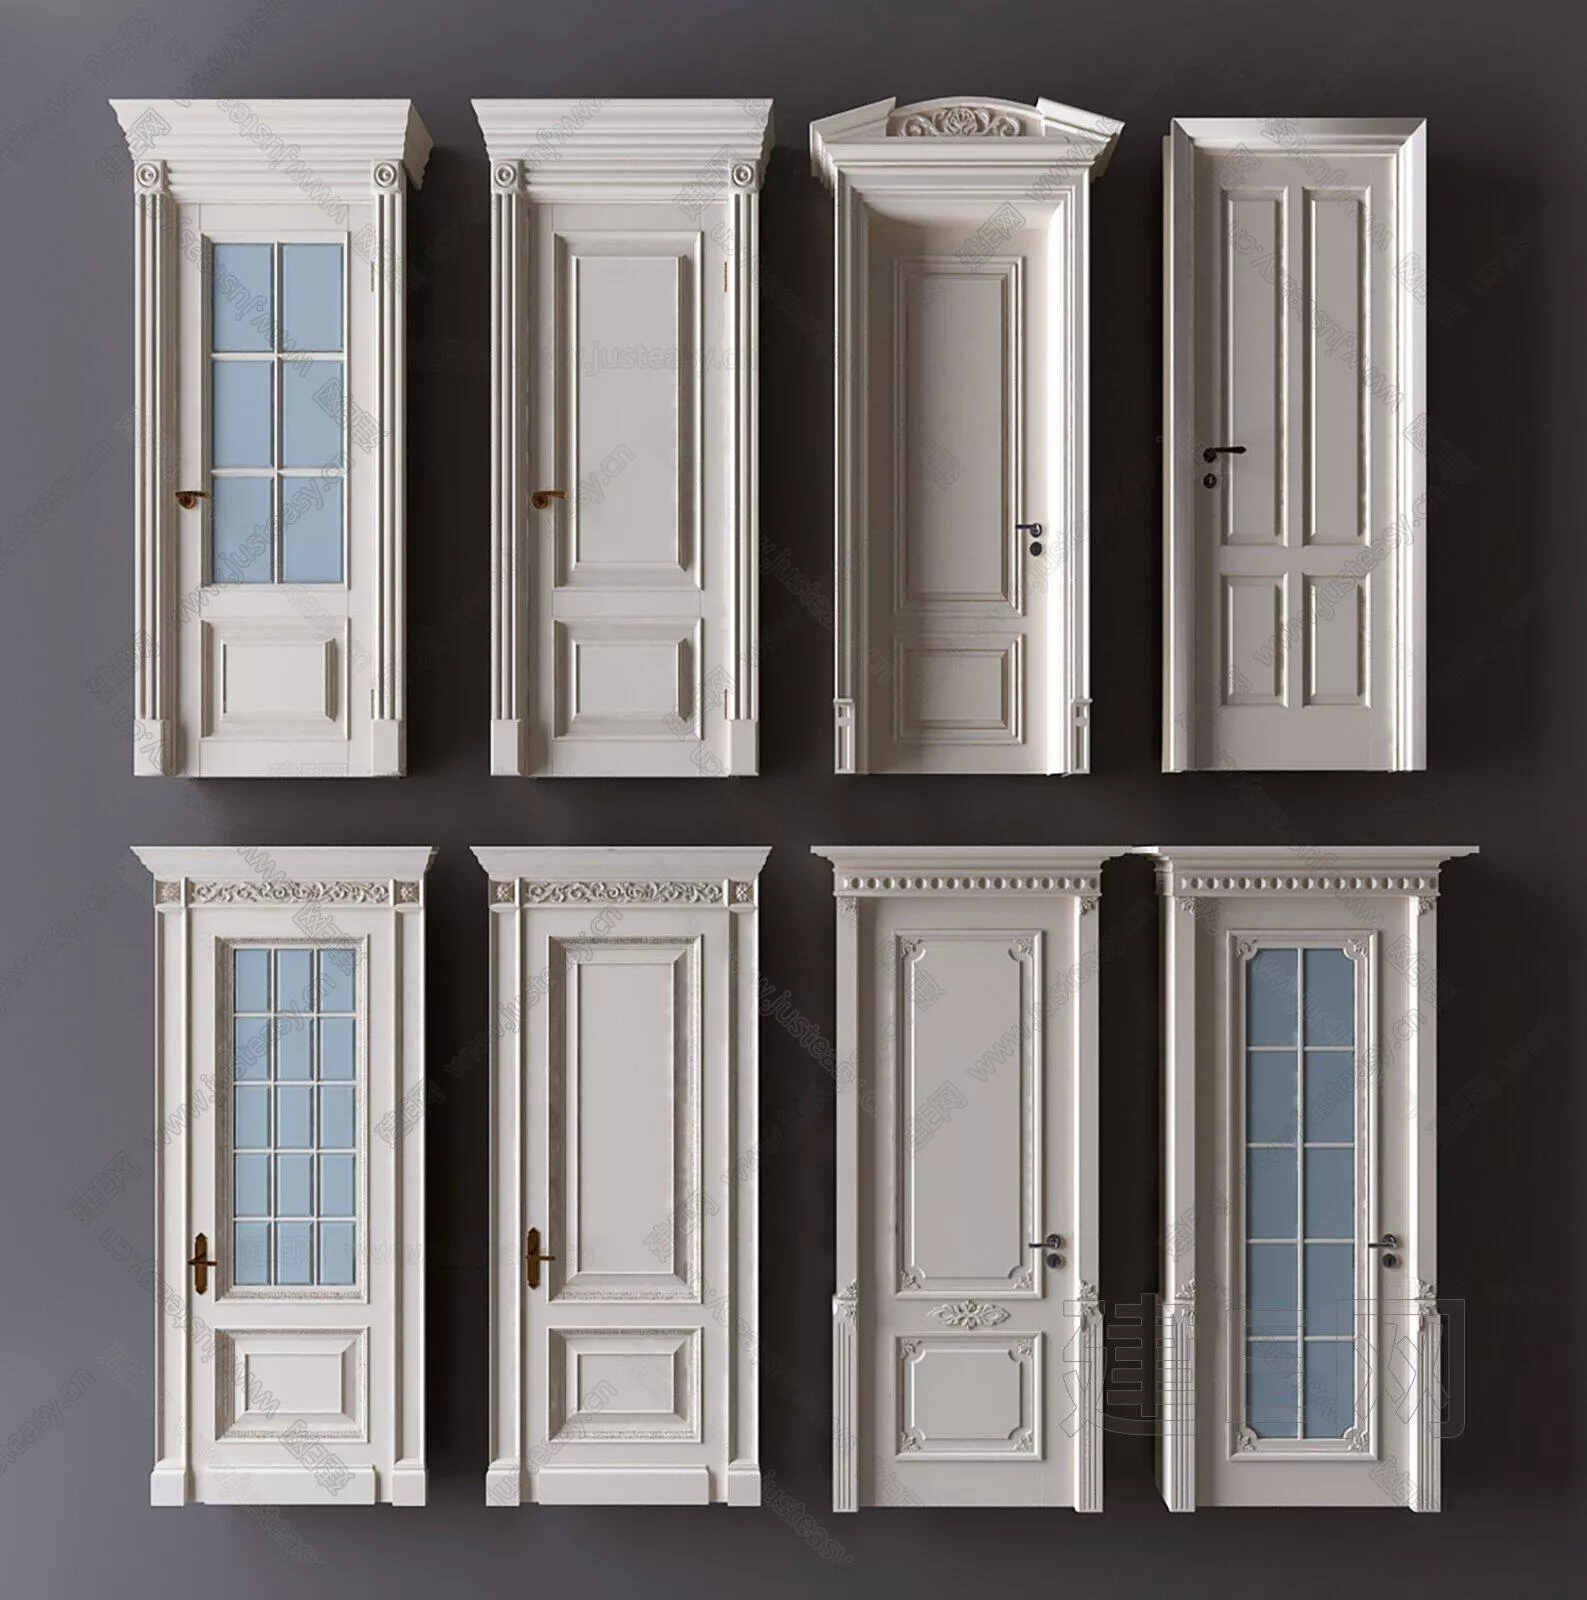 EUROPE DOOR AND WINDOWS - SKETCHUP 3D MODEL - ENSCAPE - 111234312